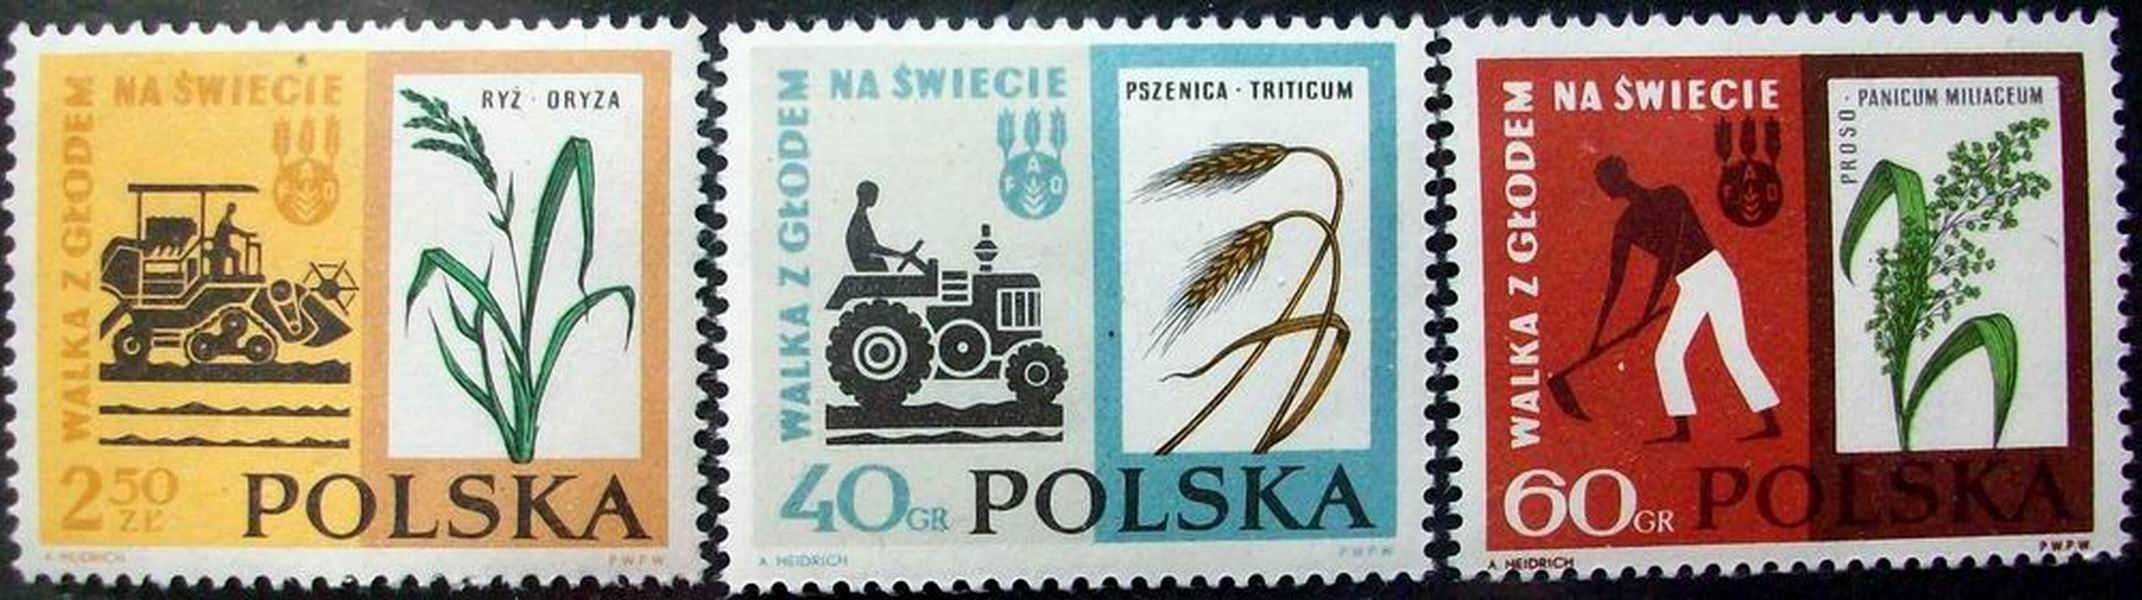 K Znaczki polskie rok 1963